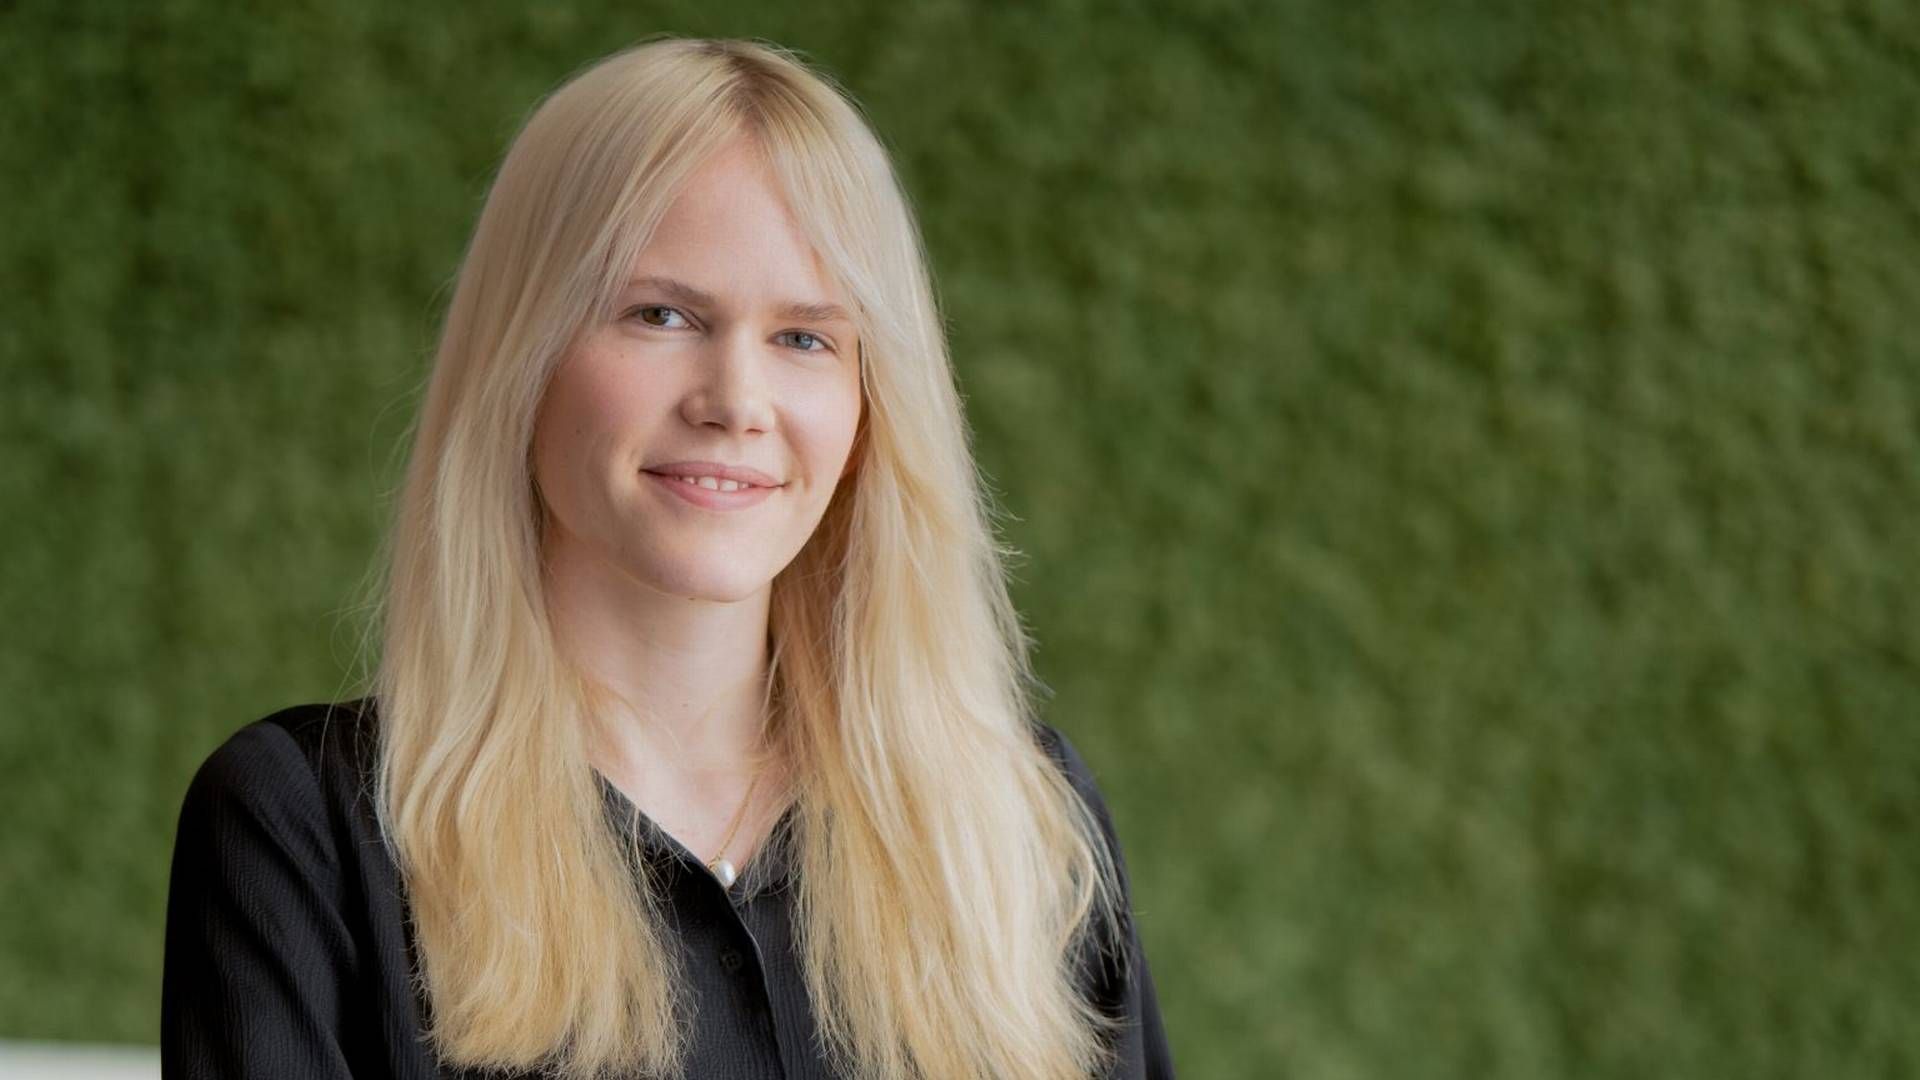 NY ADVOKAT: Veronika Steen Svendsen har startet som advokat i Hjort. | Foto: Hjort